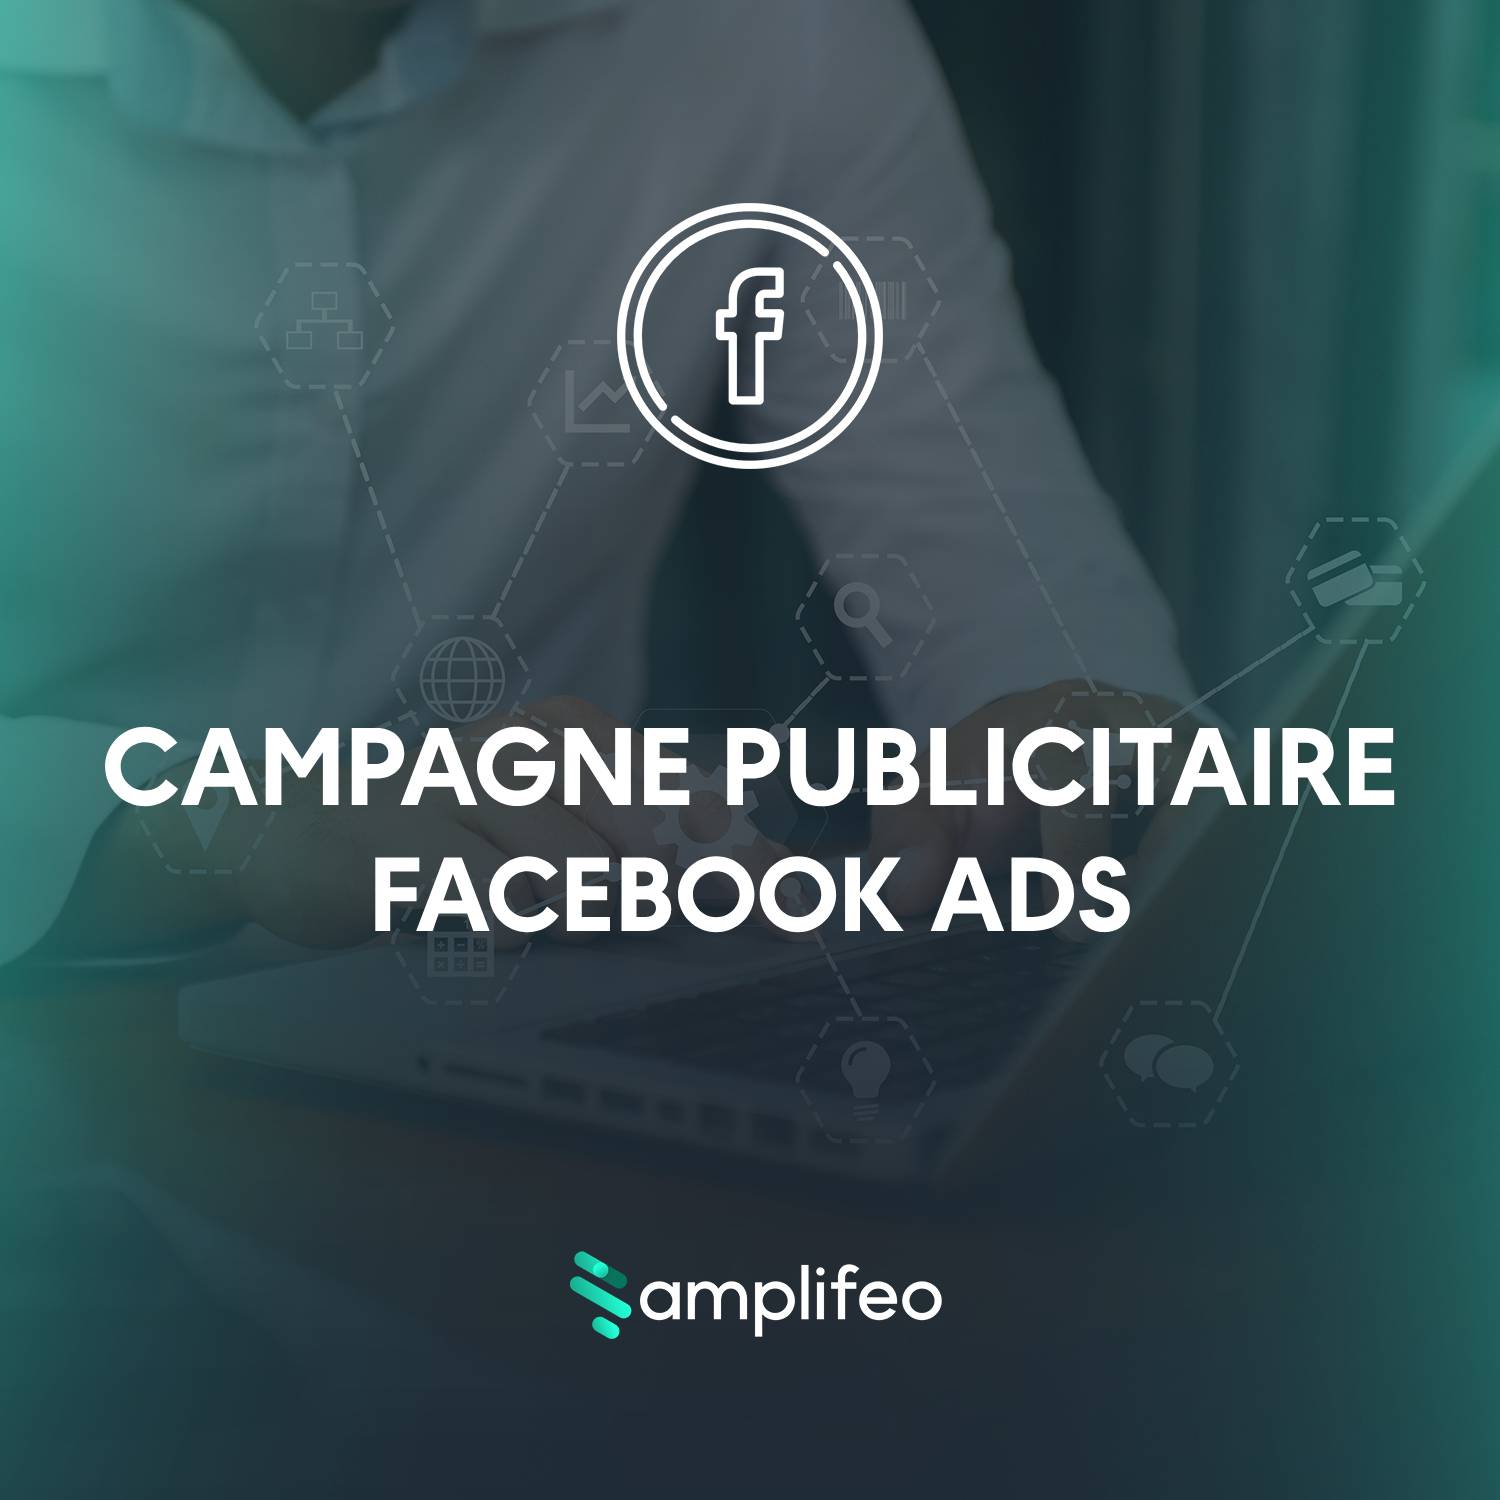 Création De Campagne Publicitaire Facebook Ads